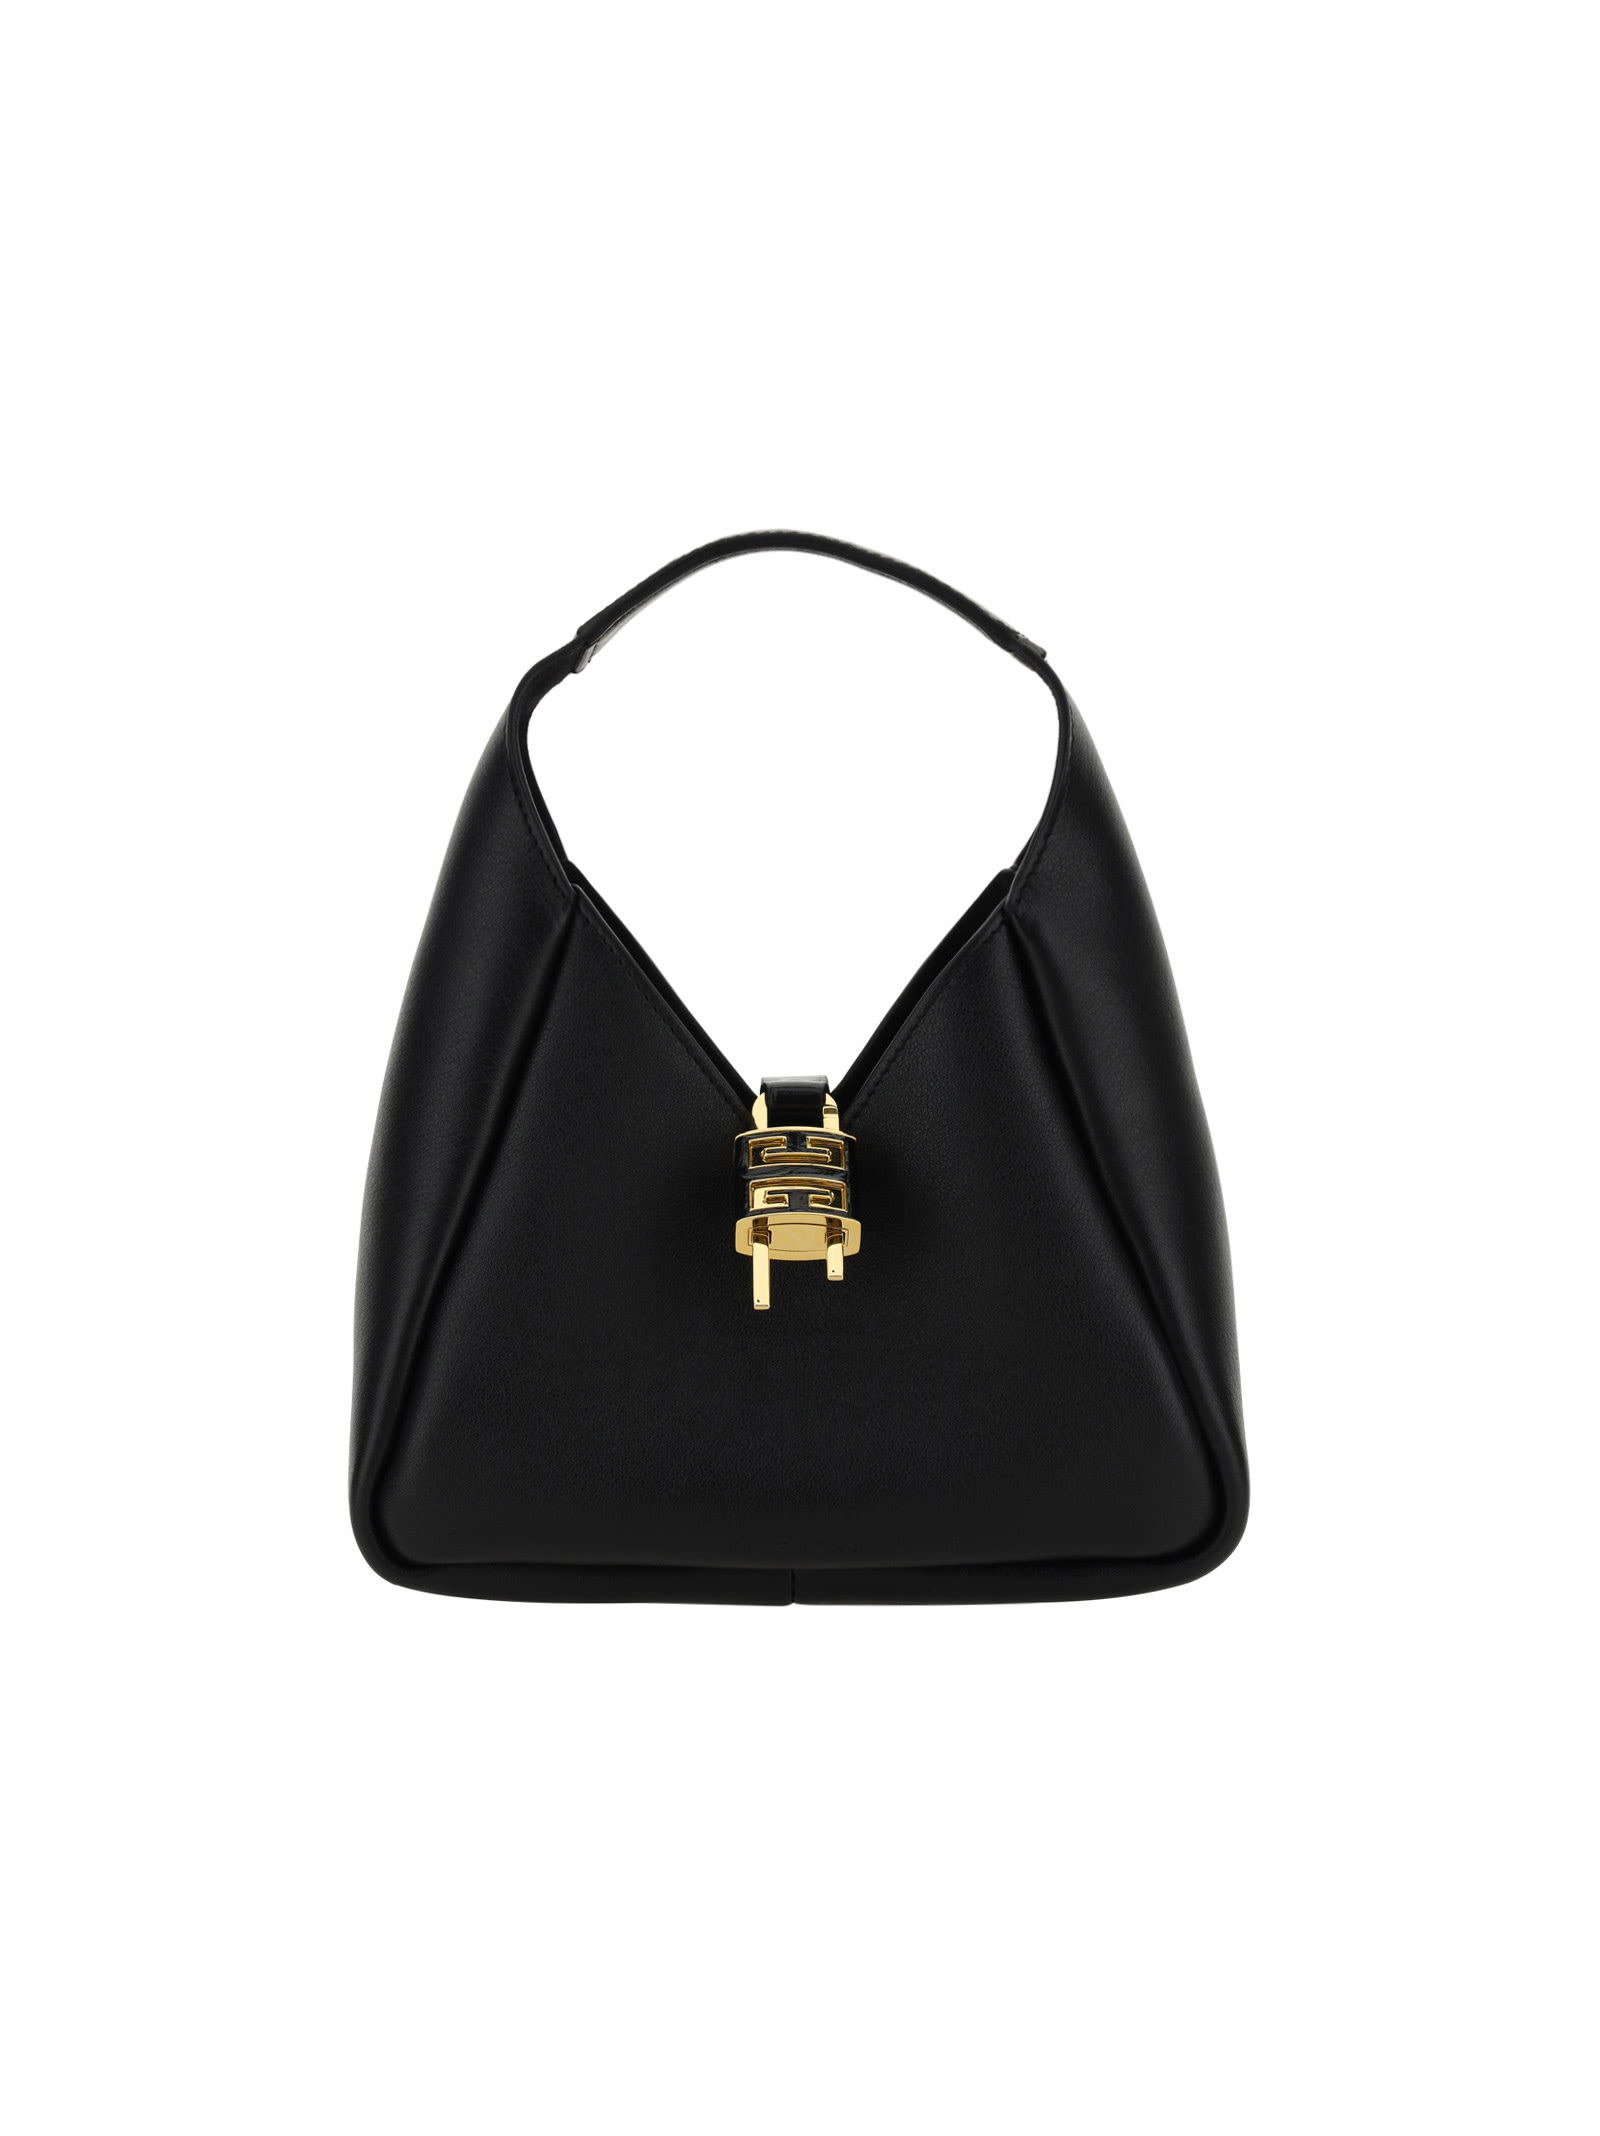 Givenchy G-hobo Mini Bag In Black